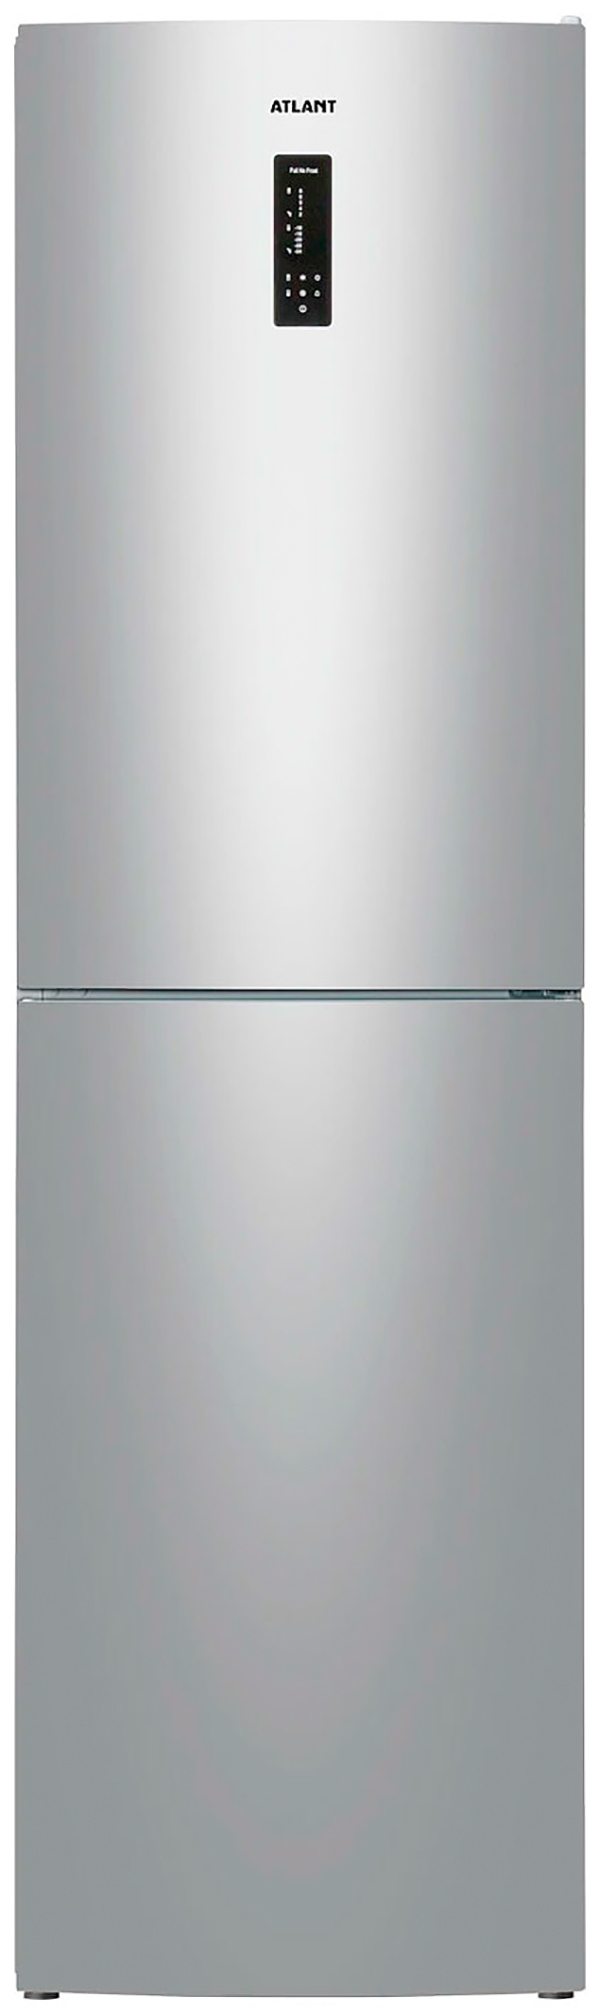 Холодильник ATLANT ХМ 4625-181 NL C серебристый холодильник atlant хм 4424 049 nd серебристый